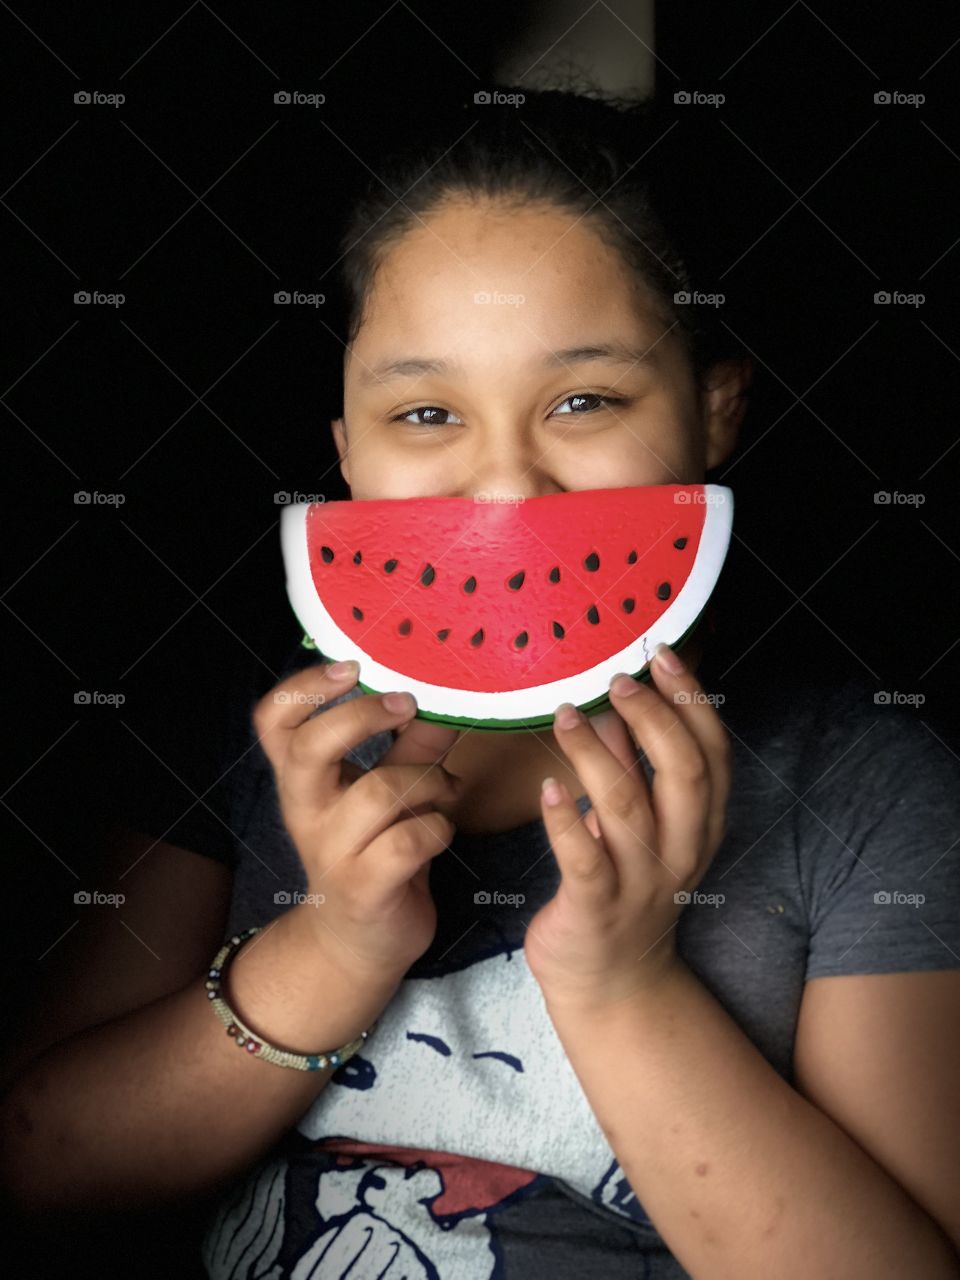 Watermelon smile!